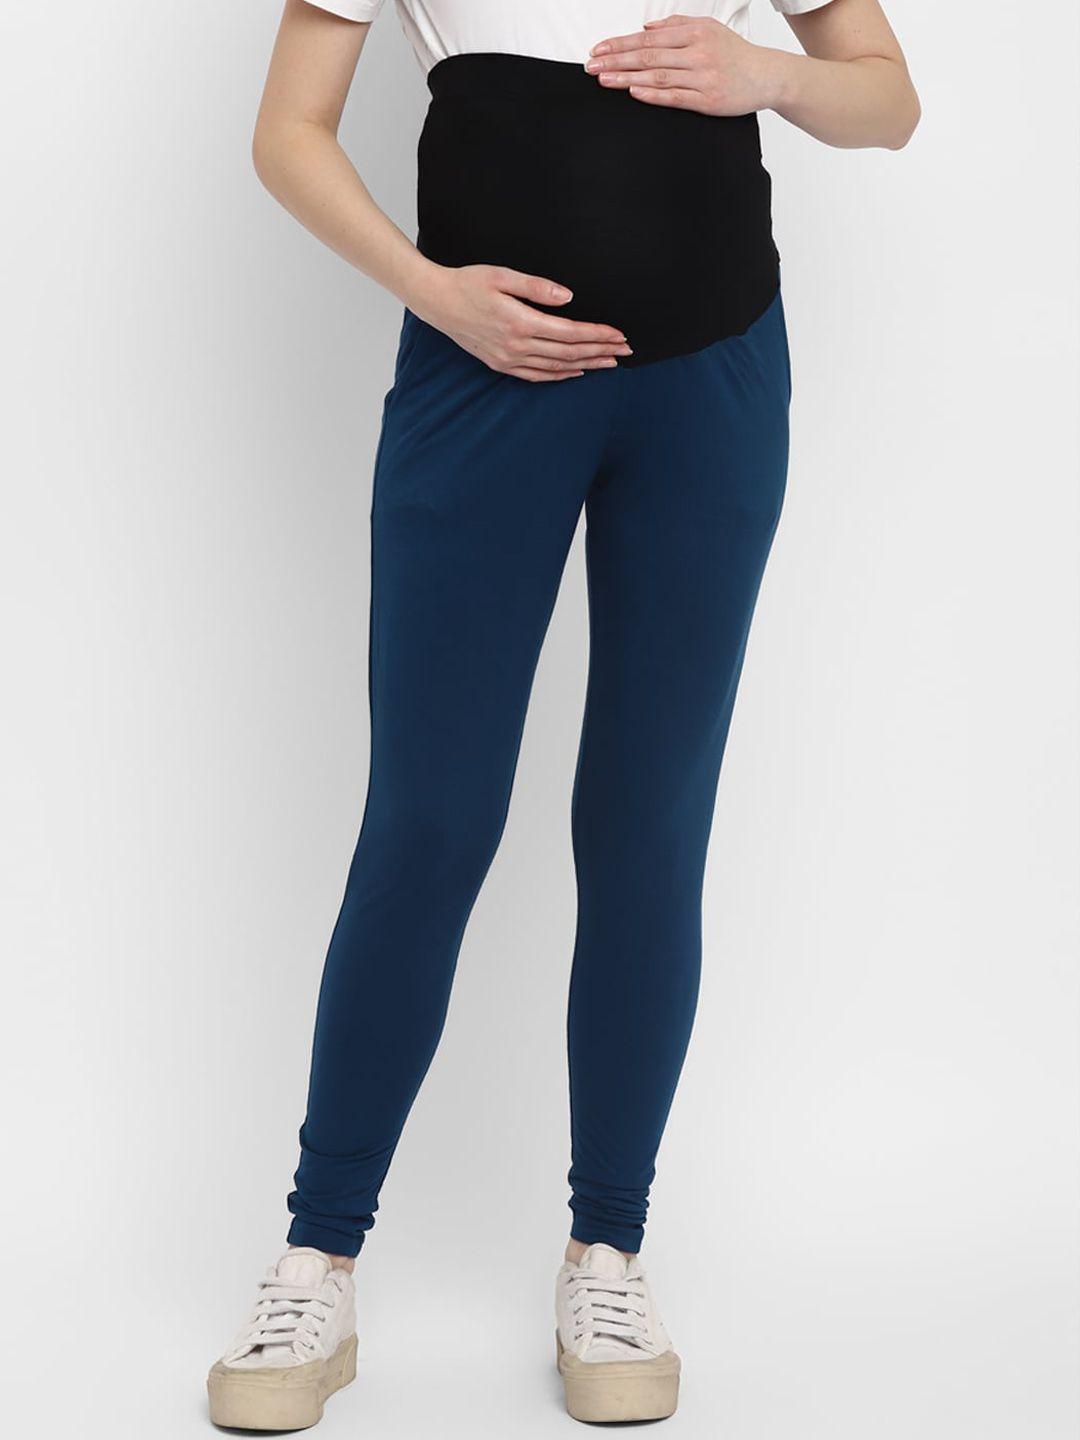 momsoon maternity women navy blue & black solid ankle length leggings